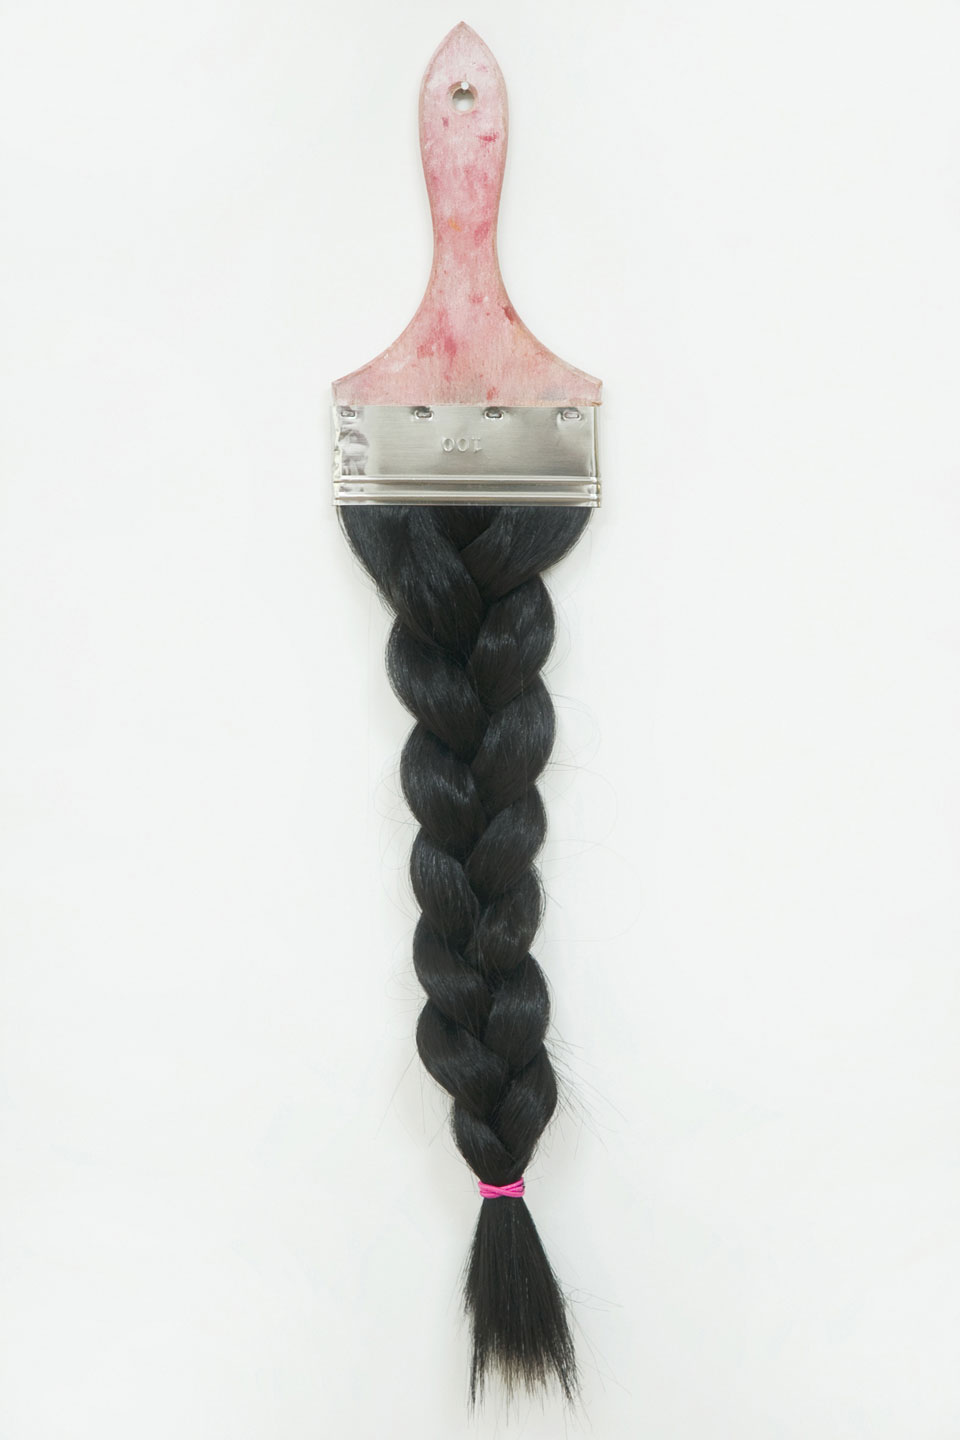 Hairbrush Black, 50 x 10 cm, 2010